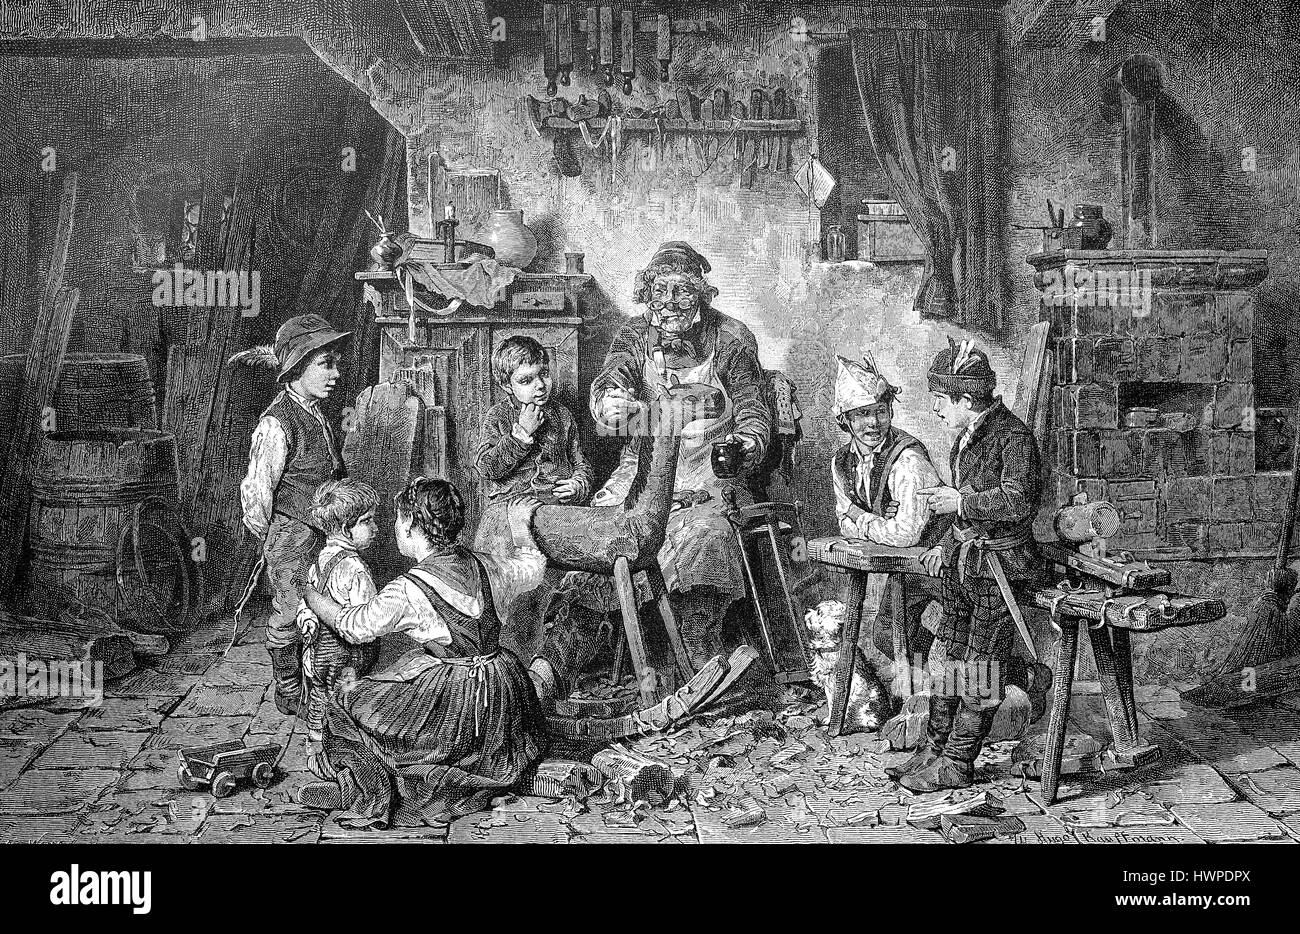 Preparazione artistica per il prossimo Natale, Schnitzer, intarsi, cavallo a dondolo, riproduzione di un originale xilografia a partire dall'anno 1882, digitale migliorata Foto Stock